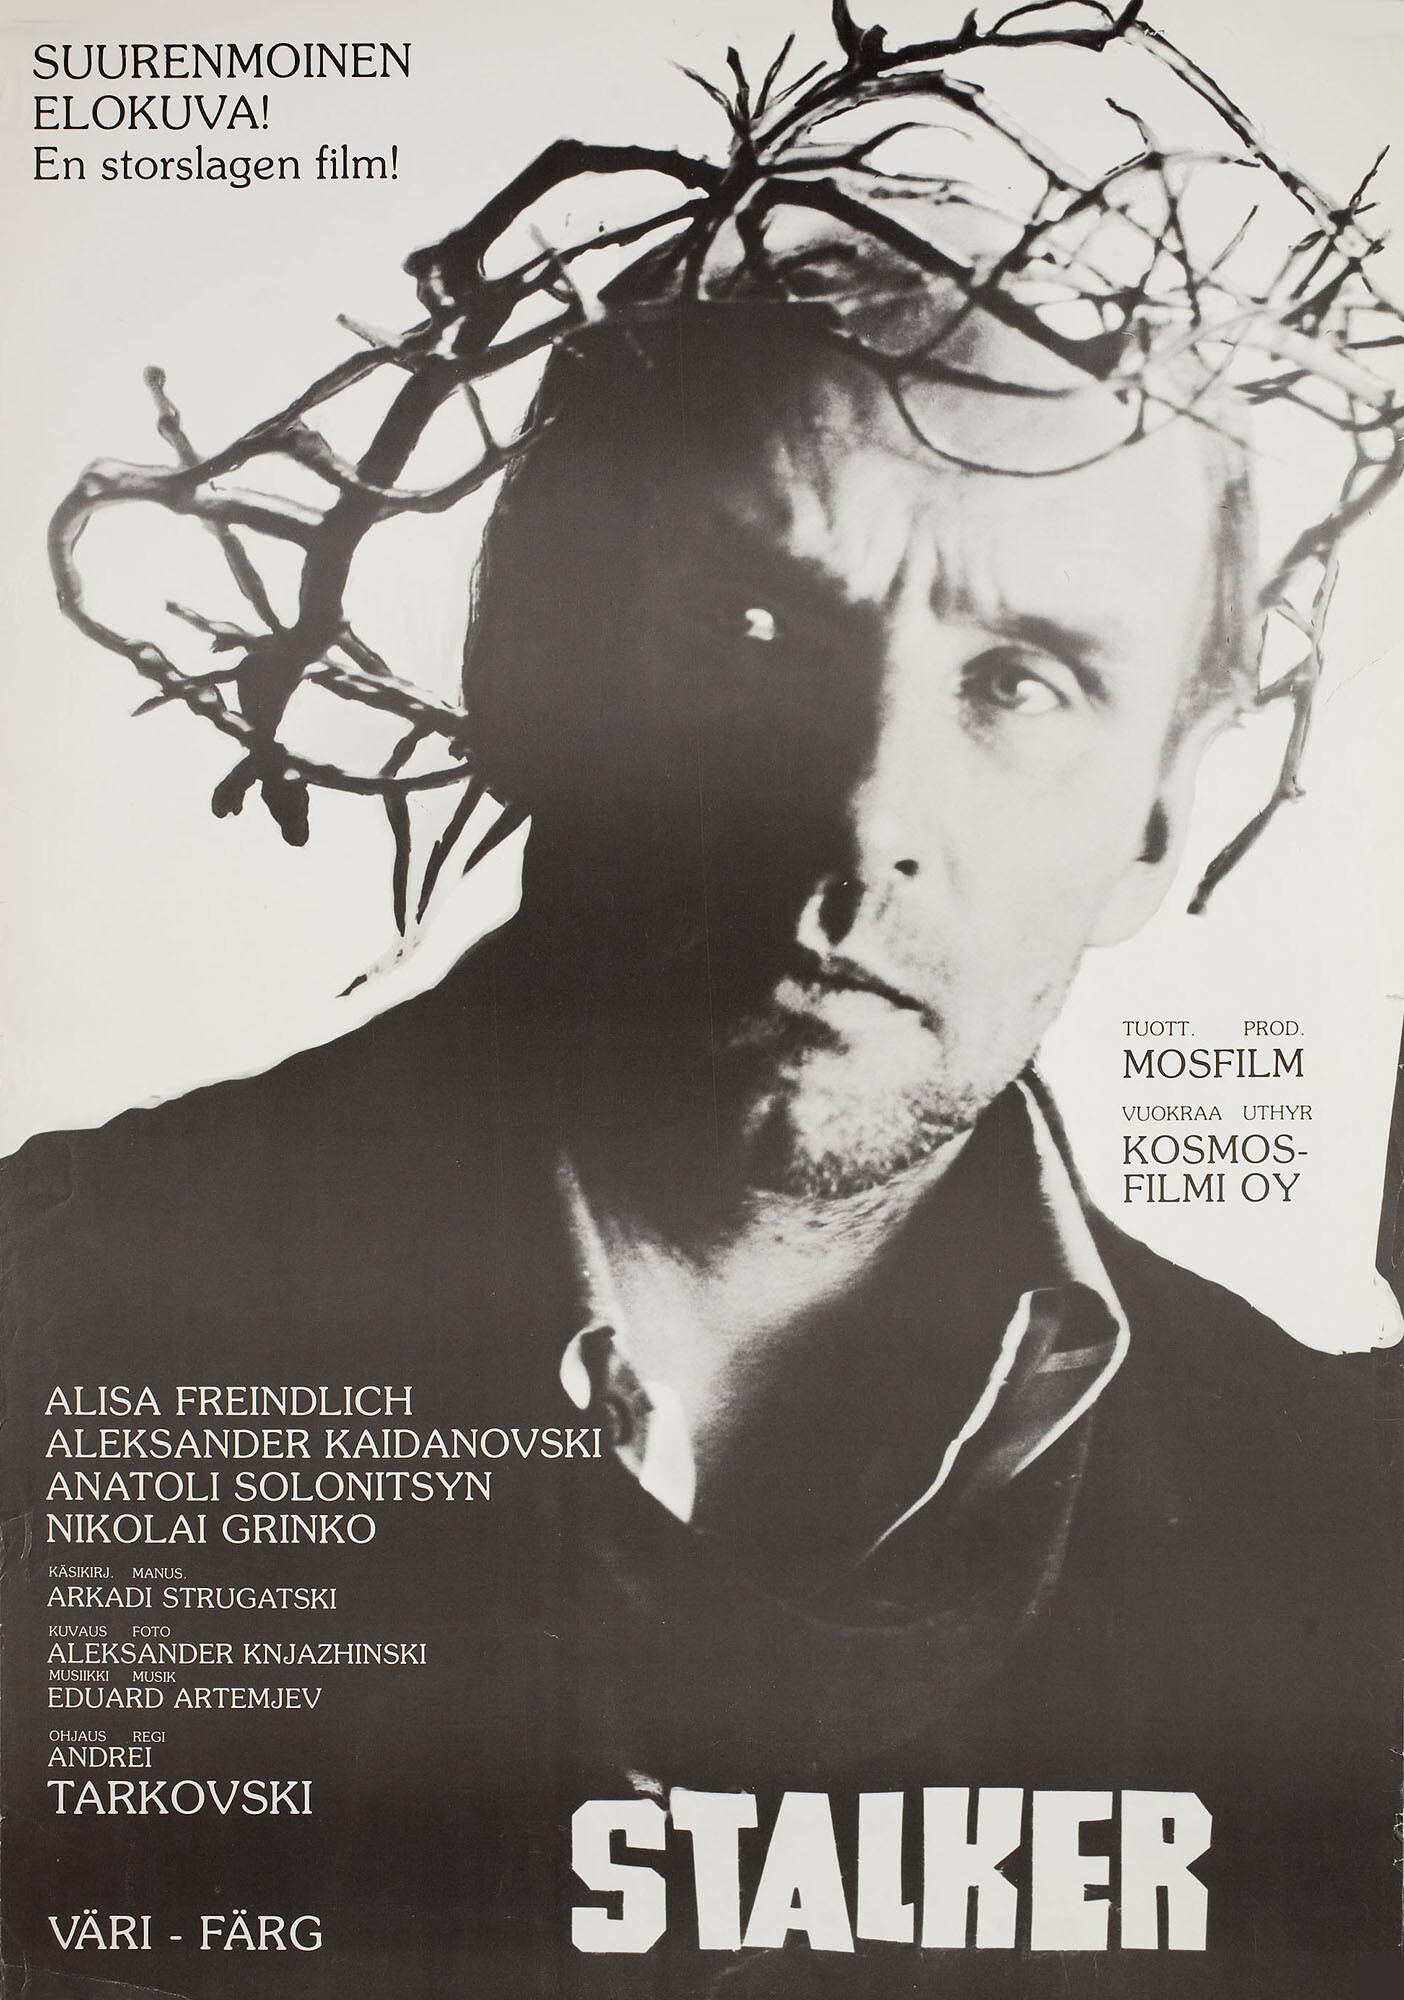 Сталкер (режиссёр Андрей Тарковский, 1979), финский постер к фильму, 1981 год